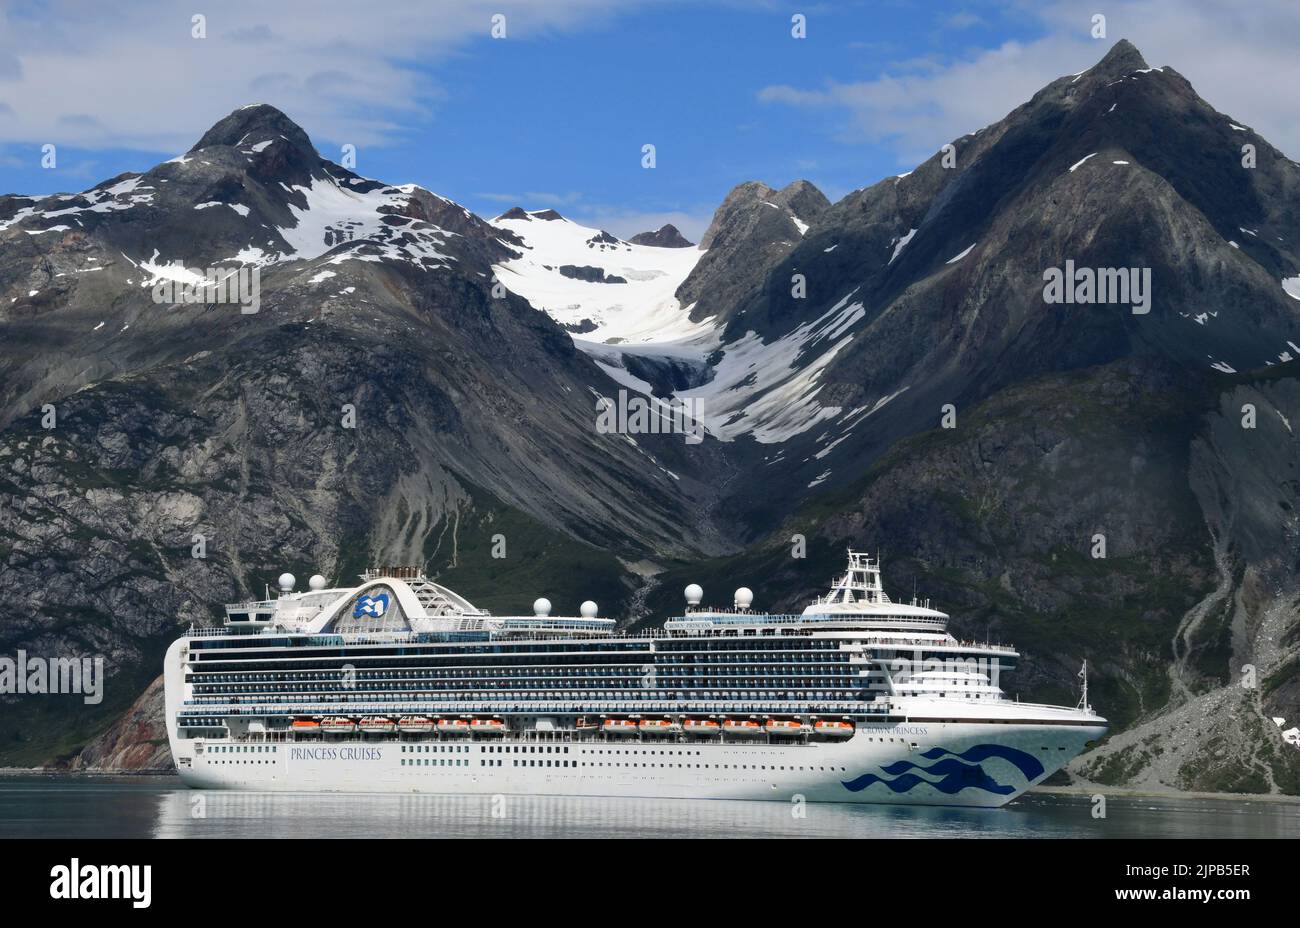 3 août 2022, parc national de la baie des Glaciers, Alaska, États-Unis : le navire de croisière Crown Princess Lines est présenté dans les eaux du parc national de la baie des Glaciers, Alaska, mercredi 3 août 2022. (Image de crédit : © Mark Hertzberg/ZUMA Press Wire) Banque D'Images